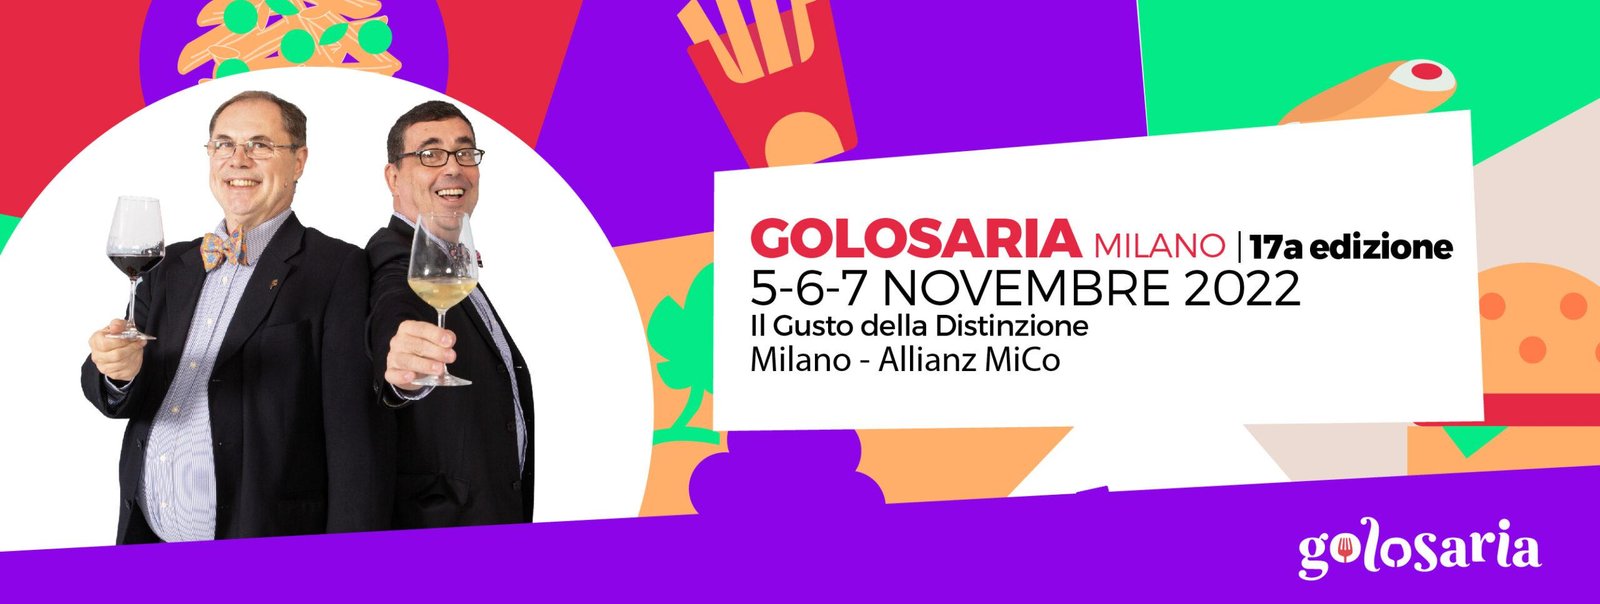 Golosaria Milano-2022